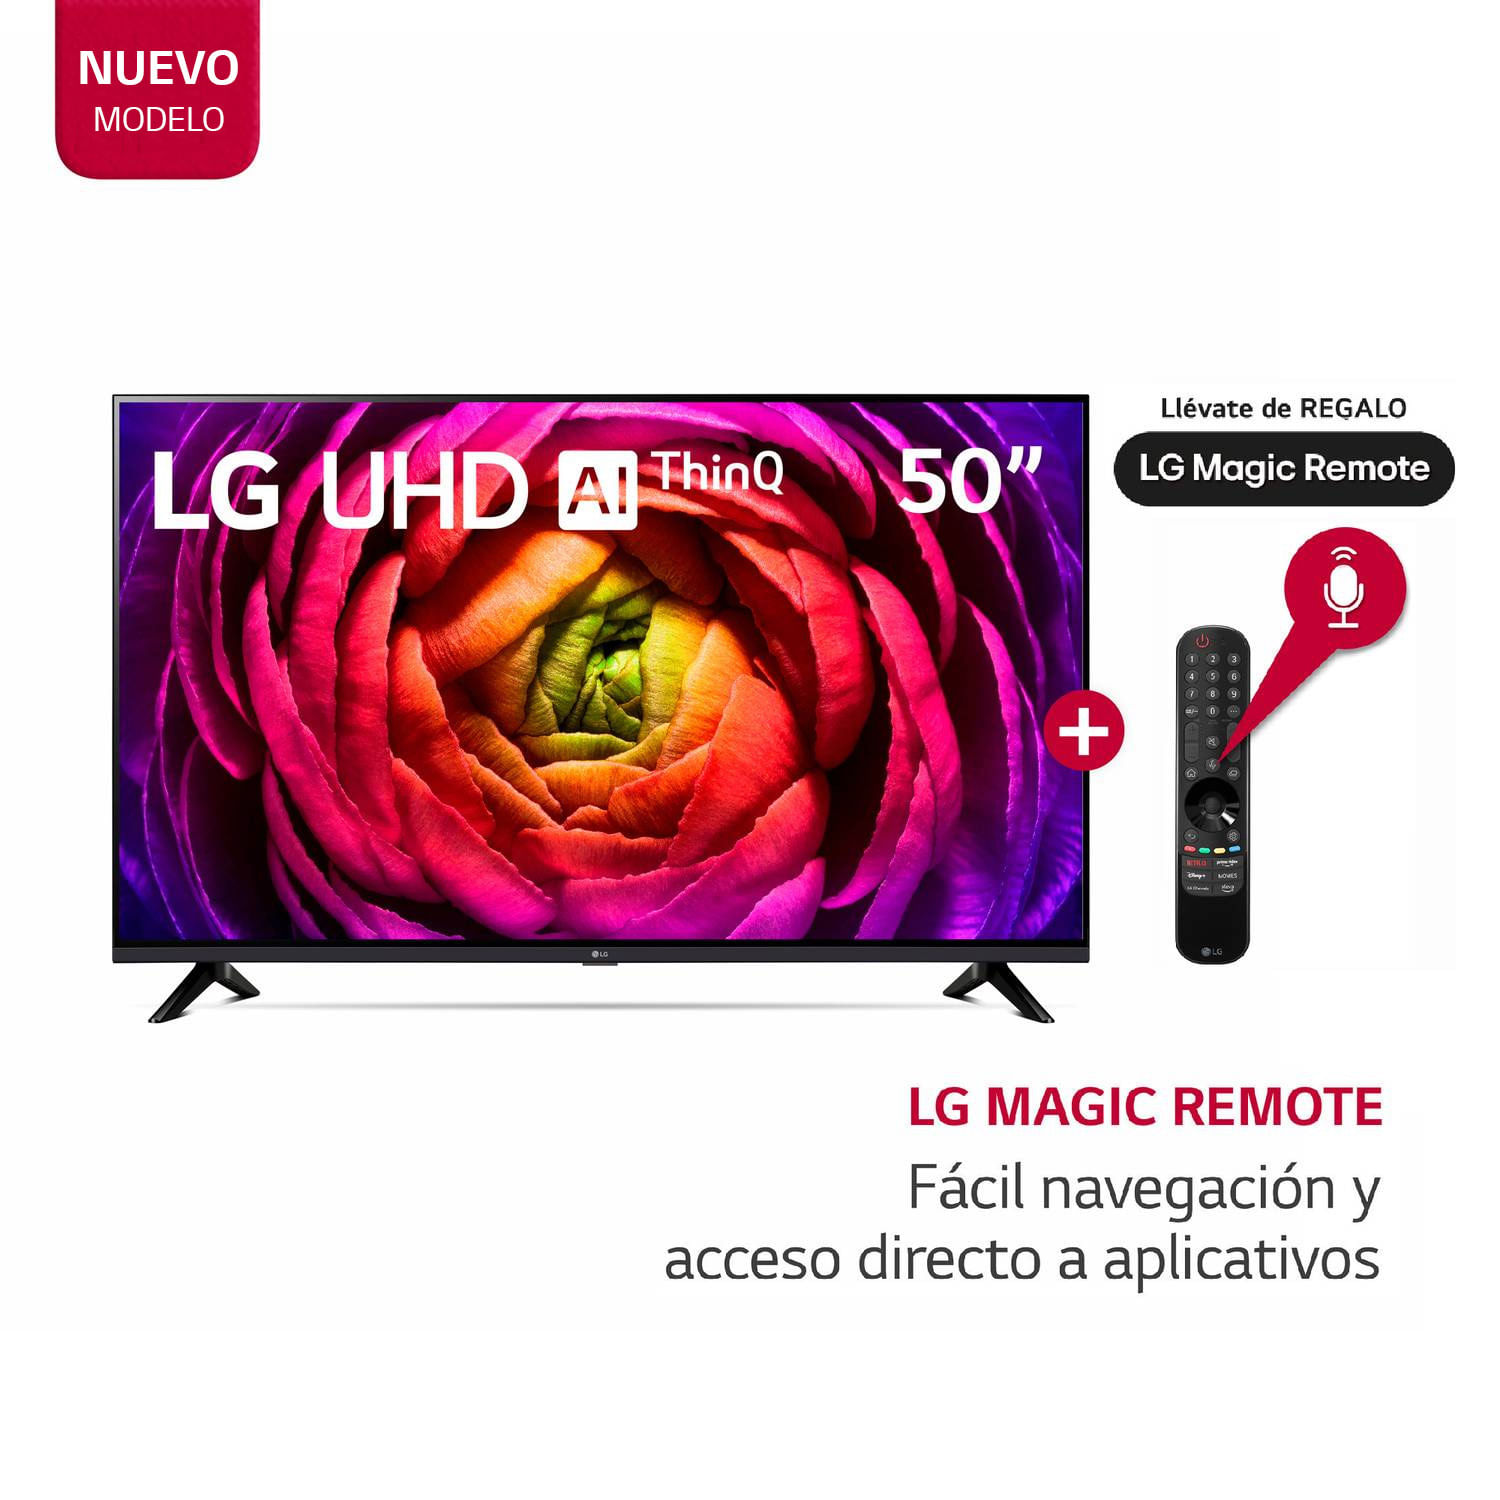 Televisor LG 50" LED Smart TV UHD 4K con ThinQ AI 50UR7300PSA + Magic Remote